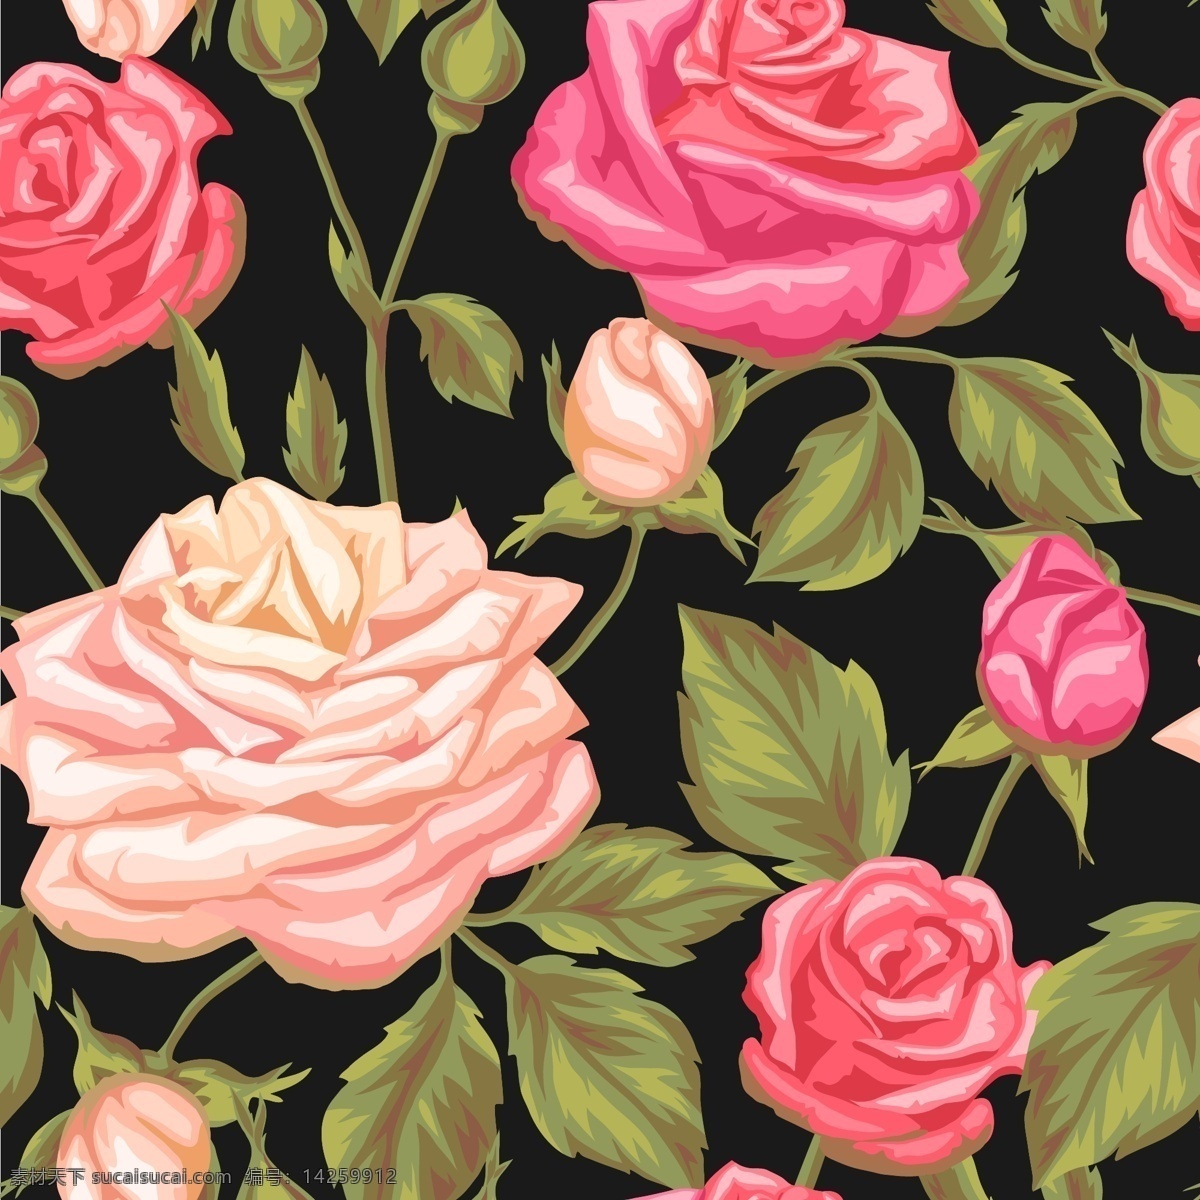 粉玫瑰背景 底纹 粉色 玫瑰花 背景